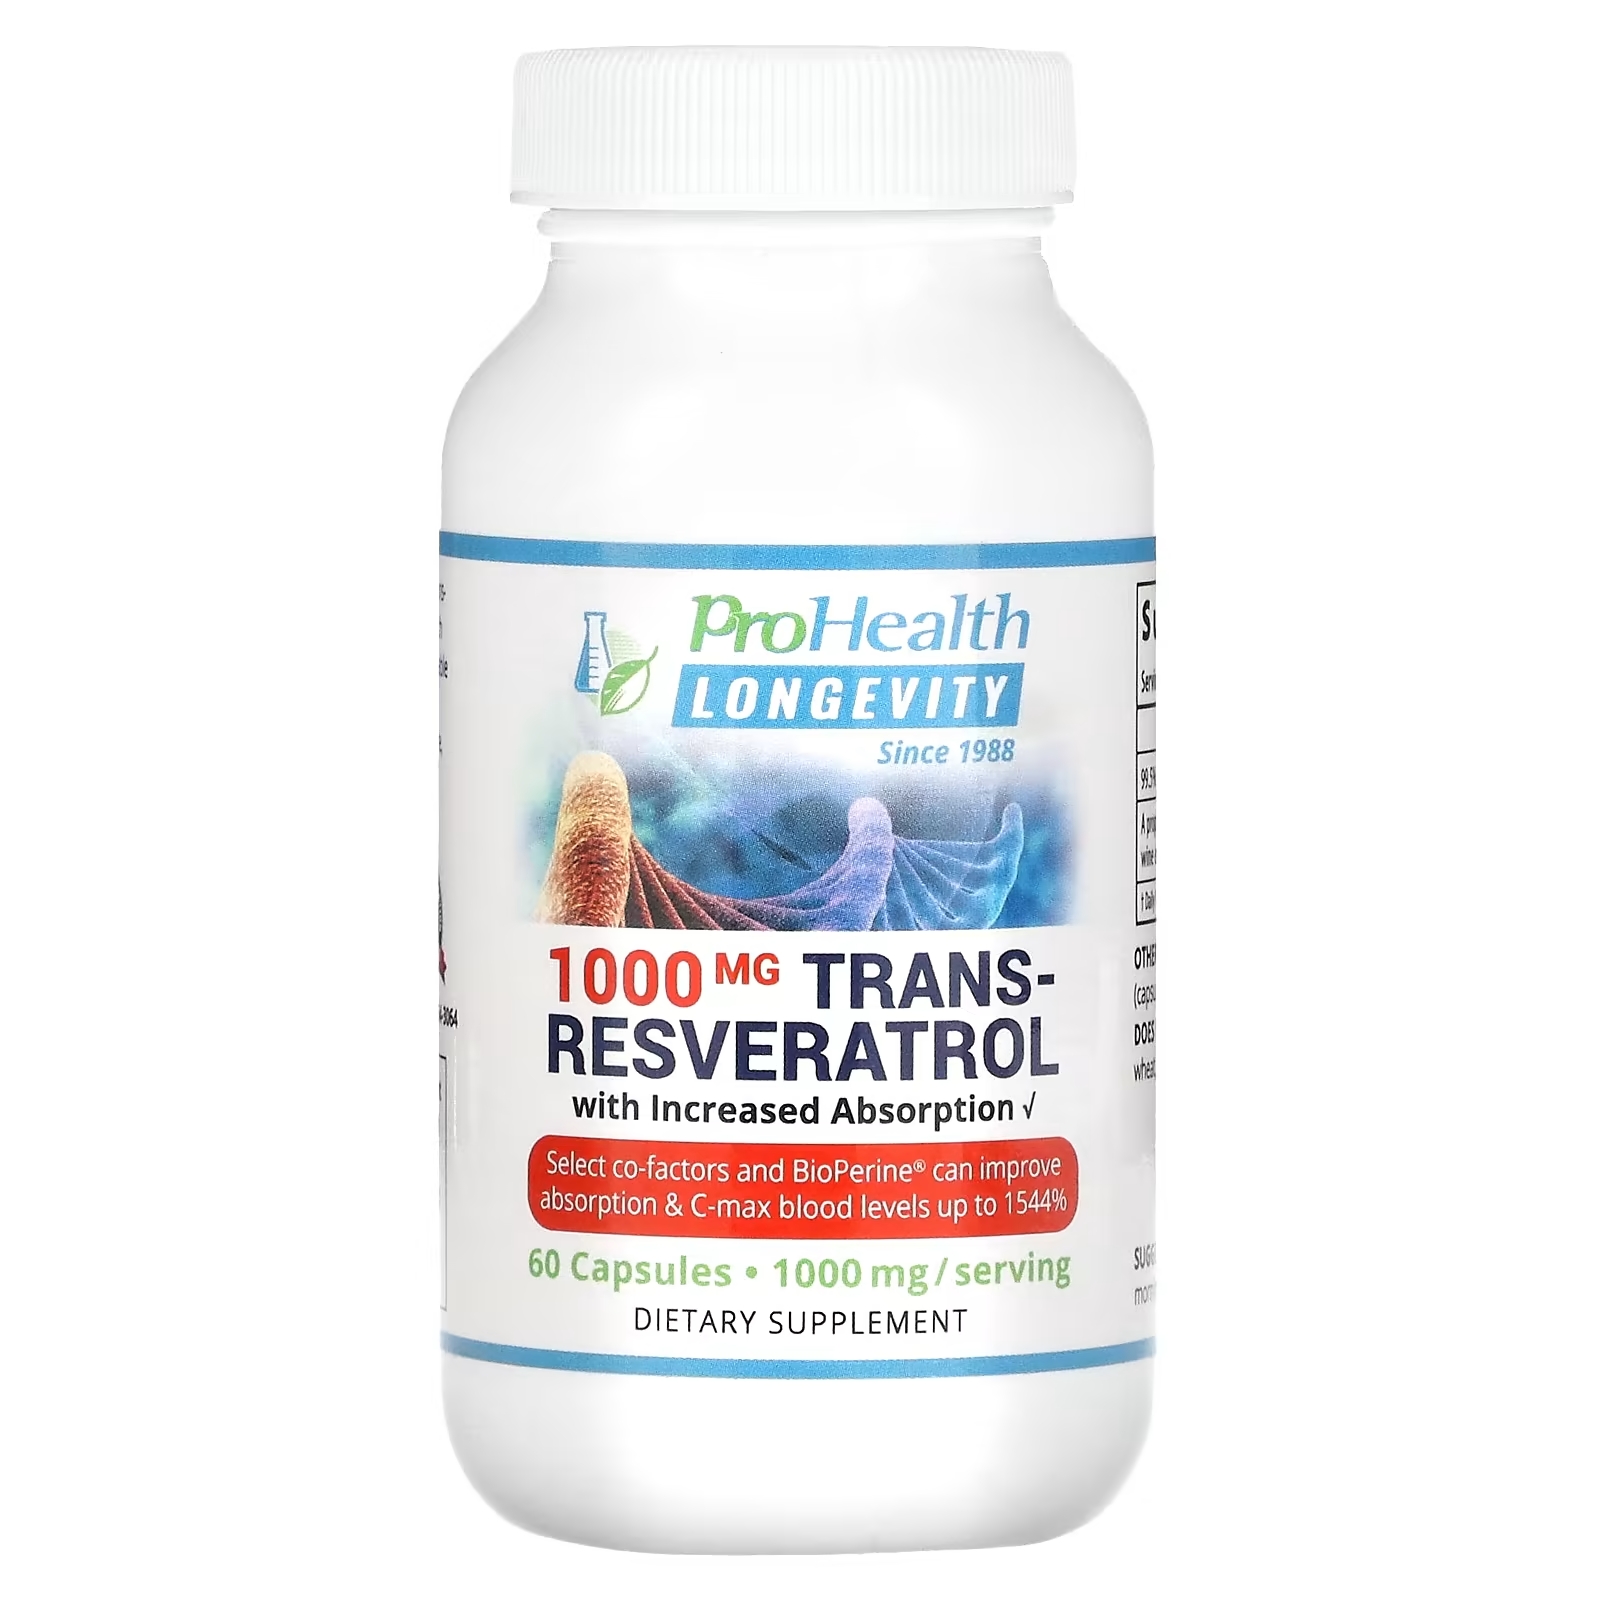 ProHealth Longevity Транс-ресвератрол для повышения усвояемости 500 мг, 60 капсул транс ресвератрол плюс prohealth longevity 1000 мг 60 капсул